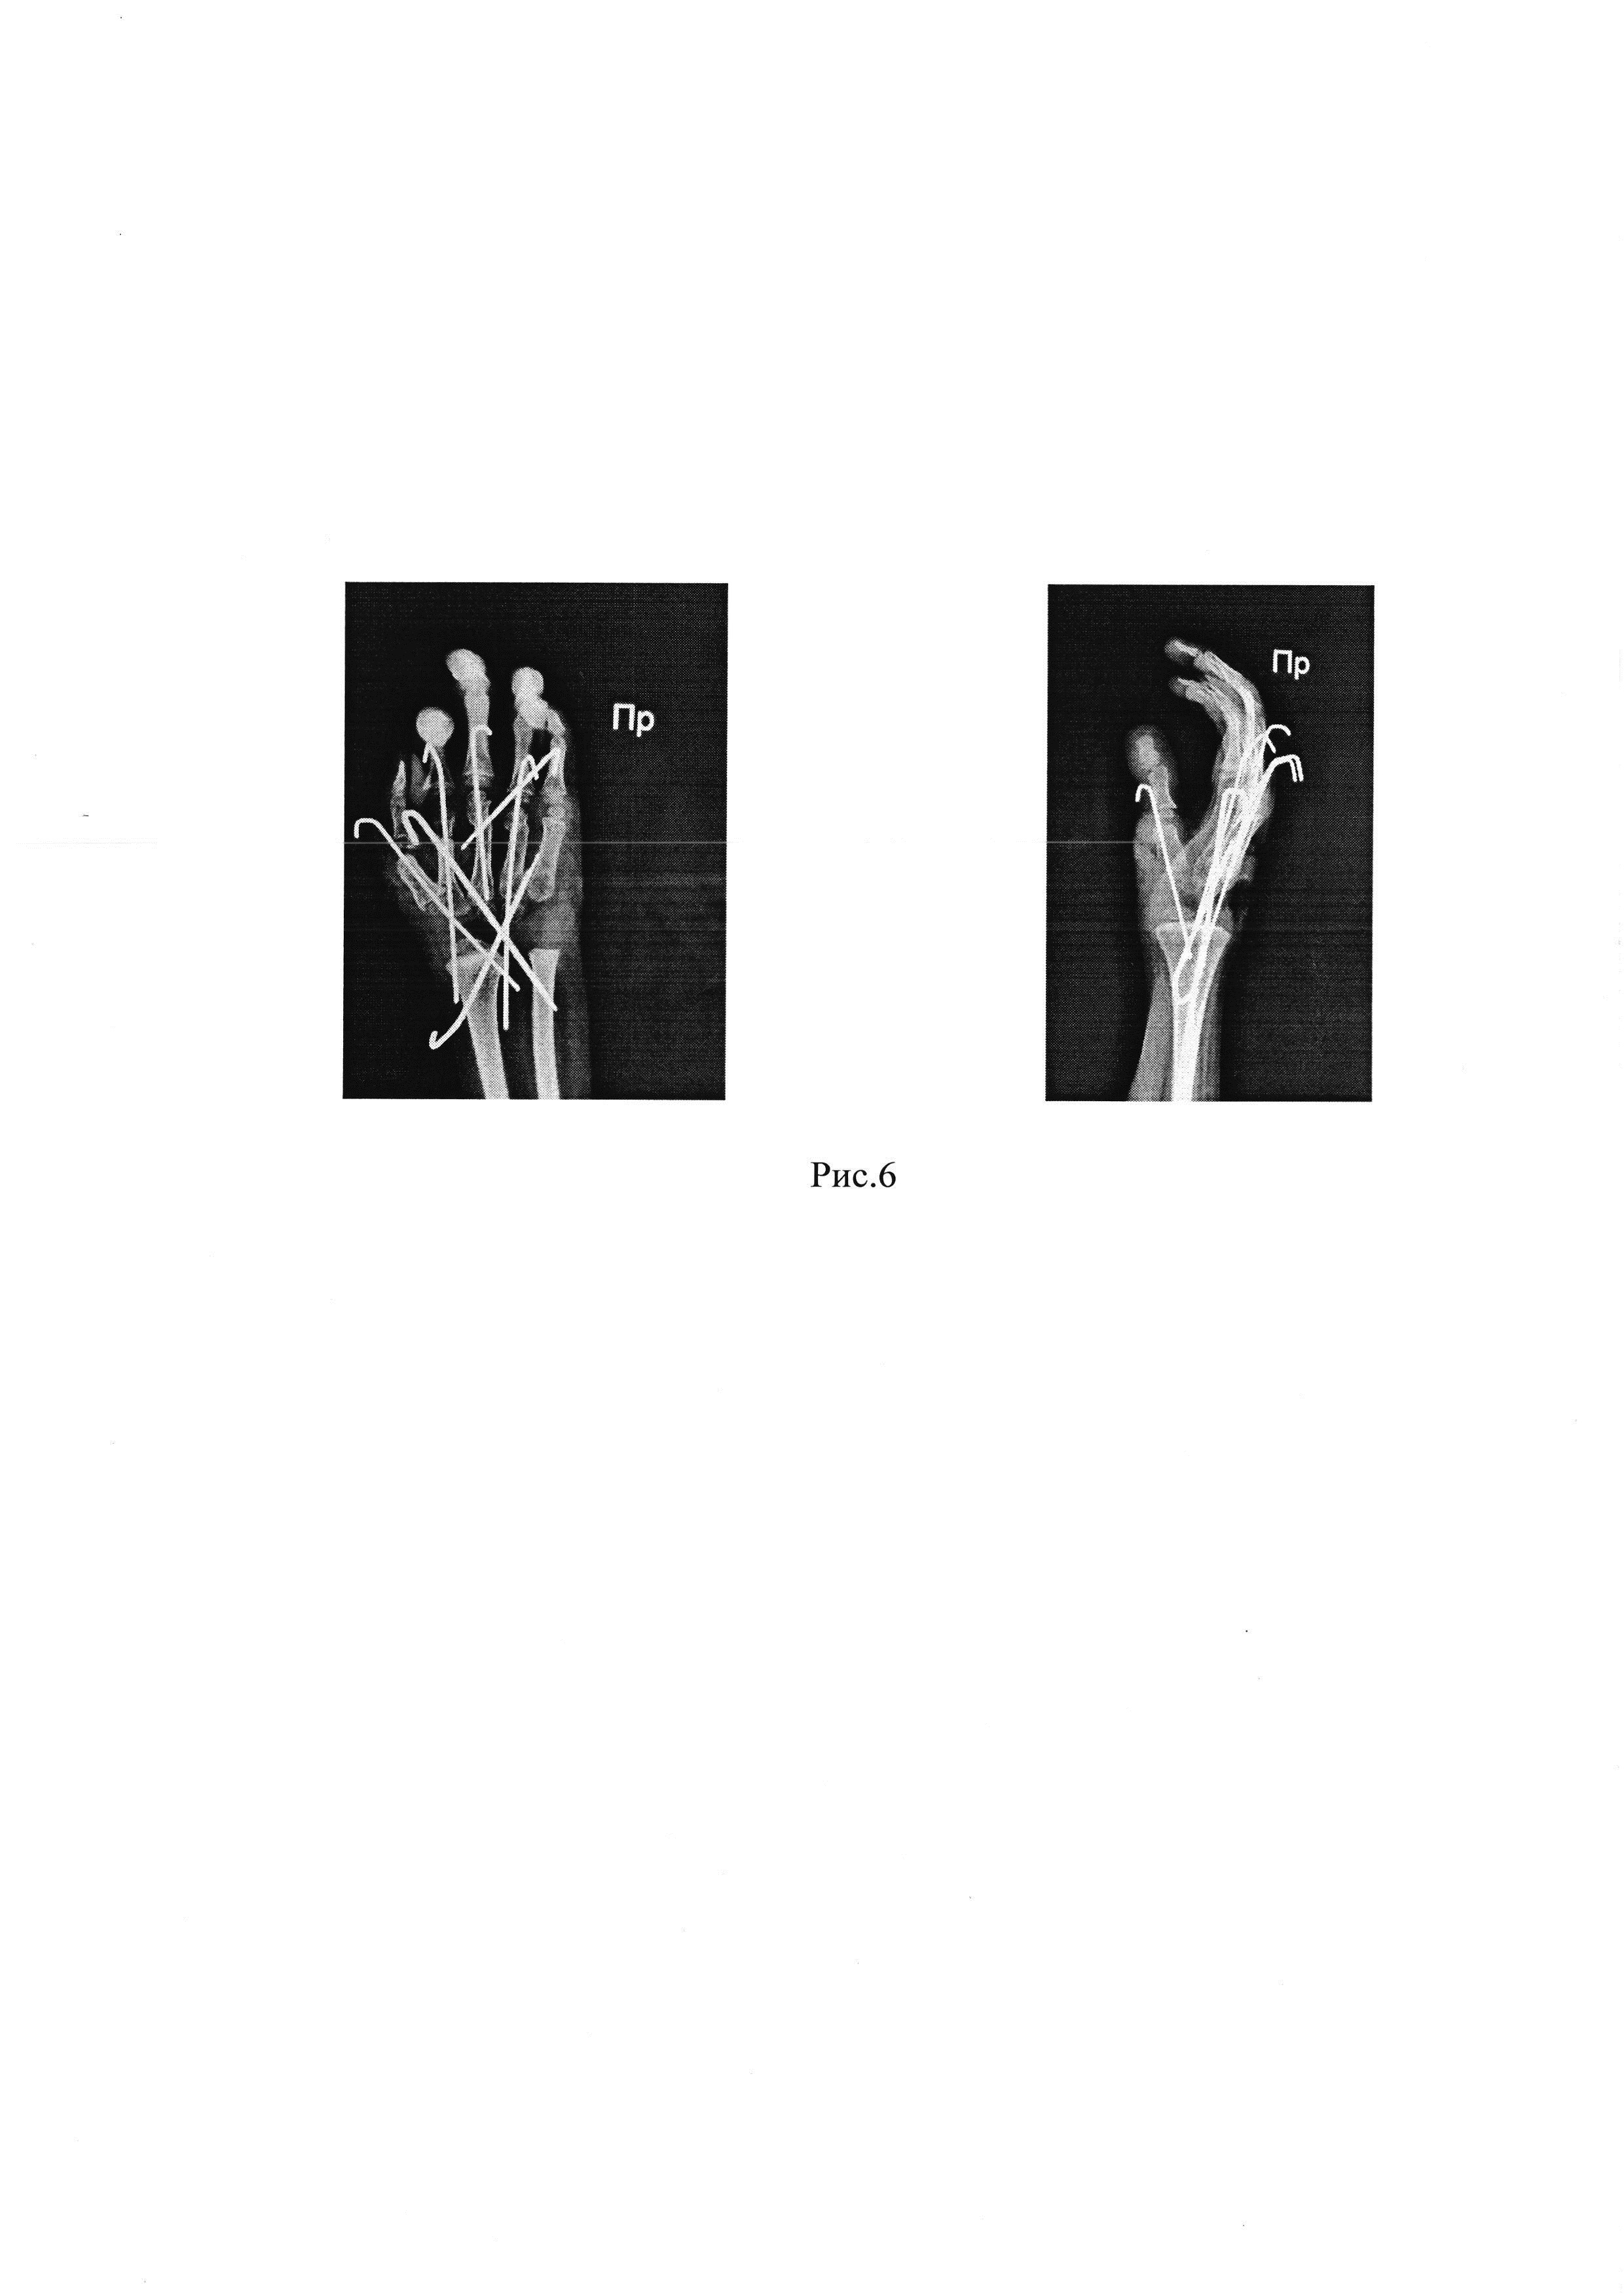 Способ одновременной коррекции разгибательной контрактуры лучезапястного сустава тяжелой степени и сгибательных контрактур пястно-фаланговых суставов II-IV пальцев кисти у детей с артрогрипозом